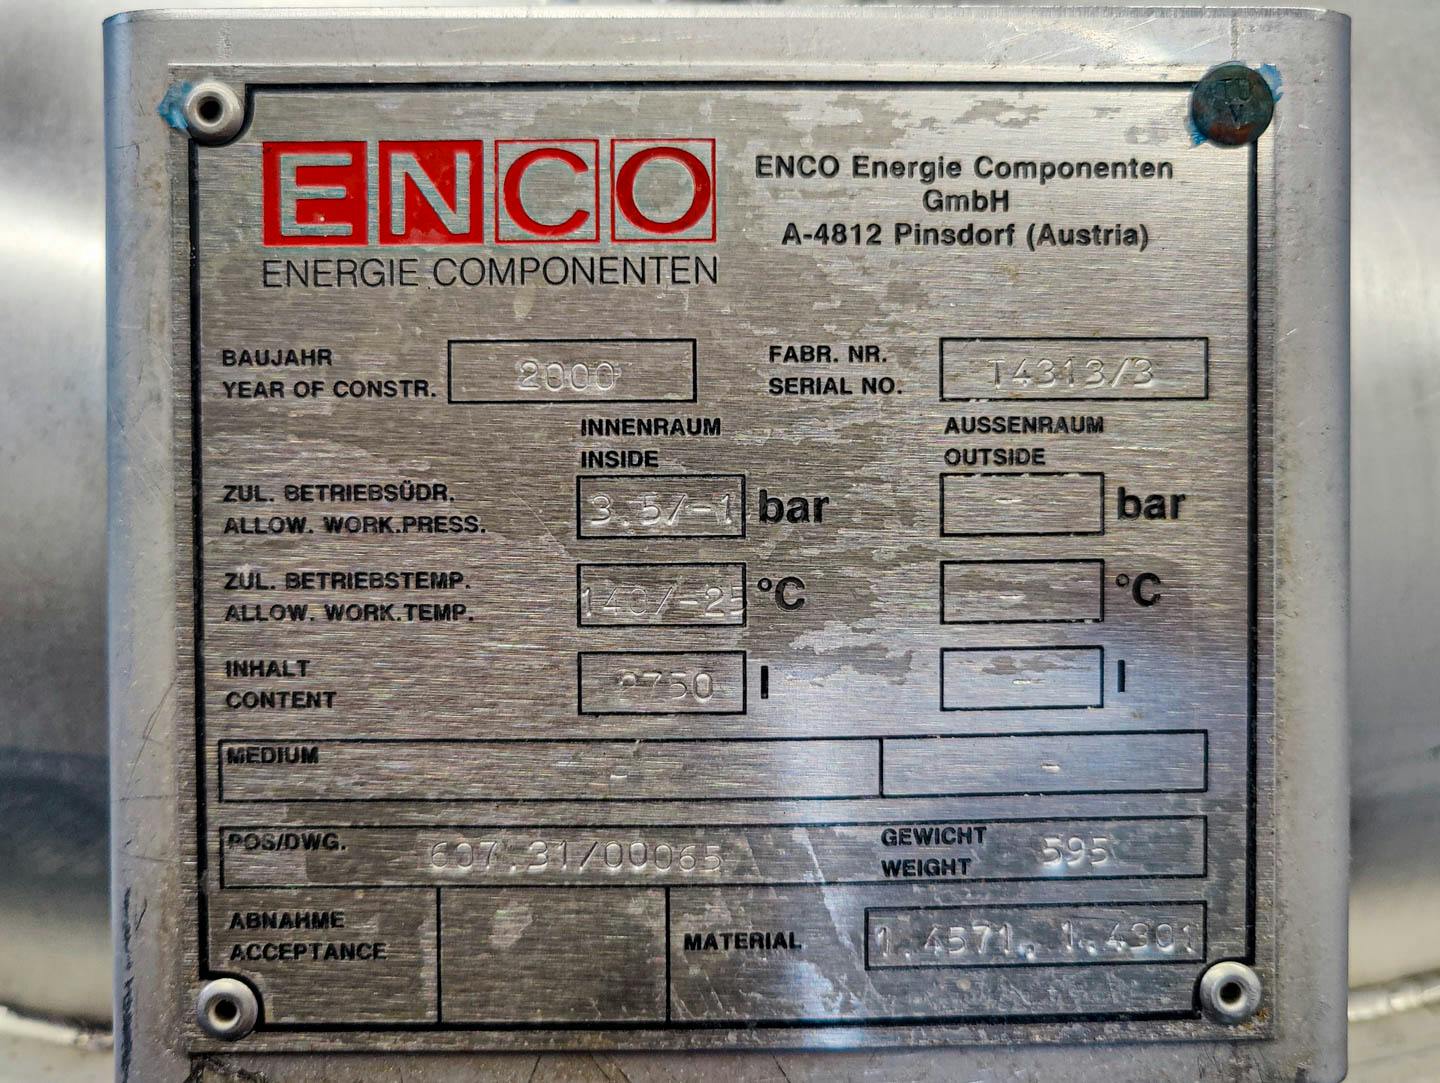 Enco - Serbatoio a pressione - image 6